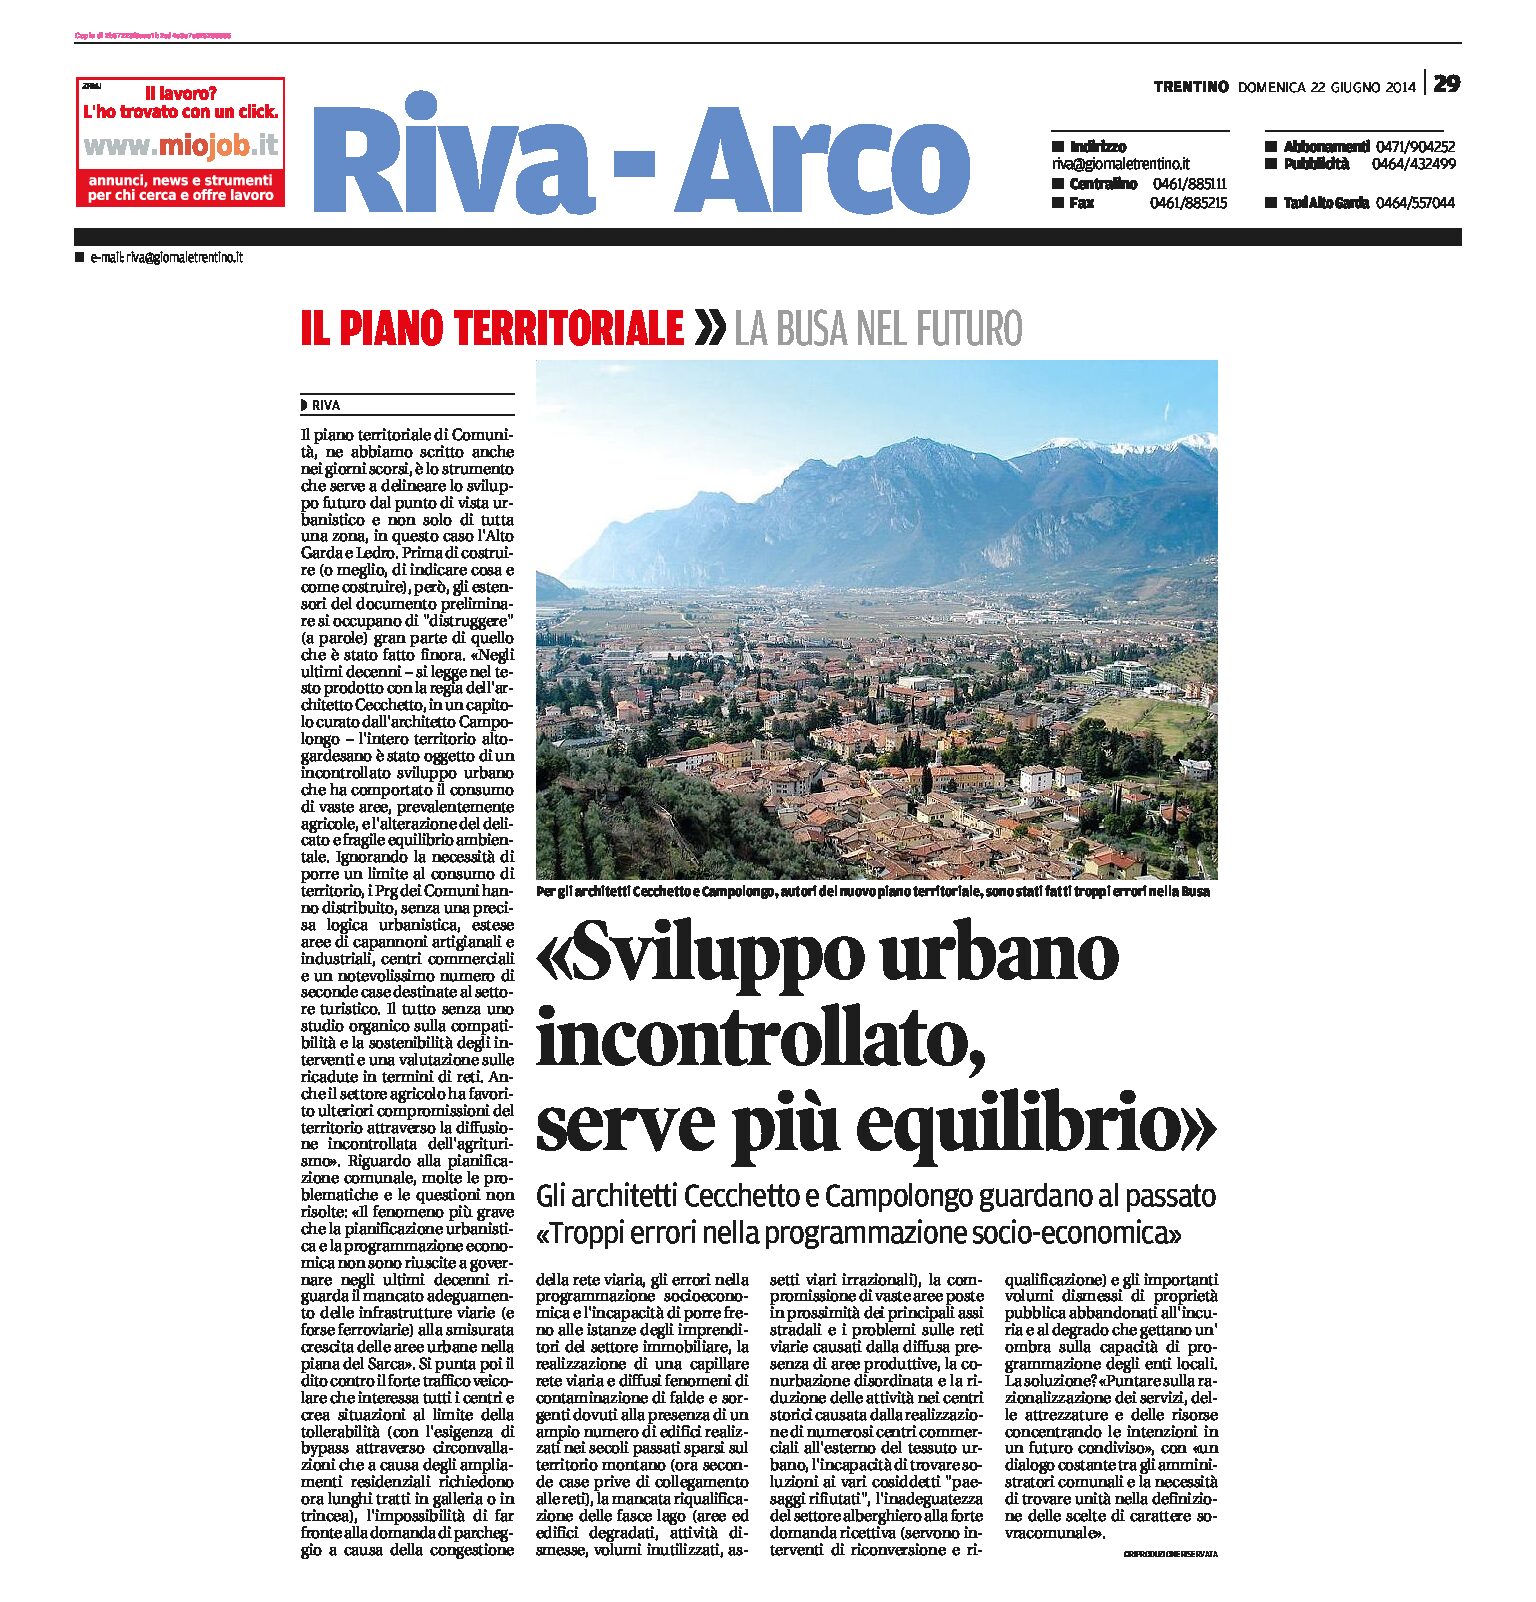 Piano territoriale Alto Garda: sviluppo urbano incontrollato, serve più equilibrio